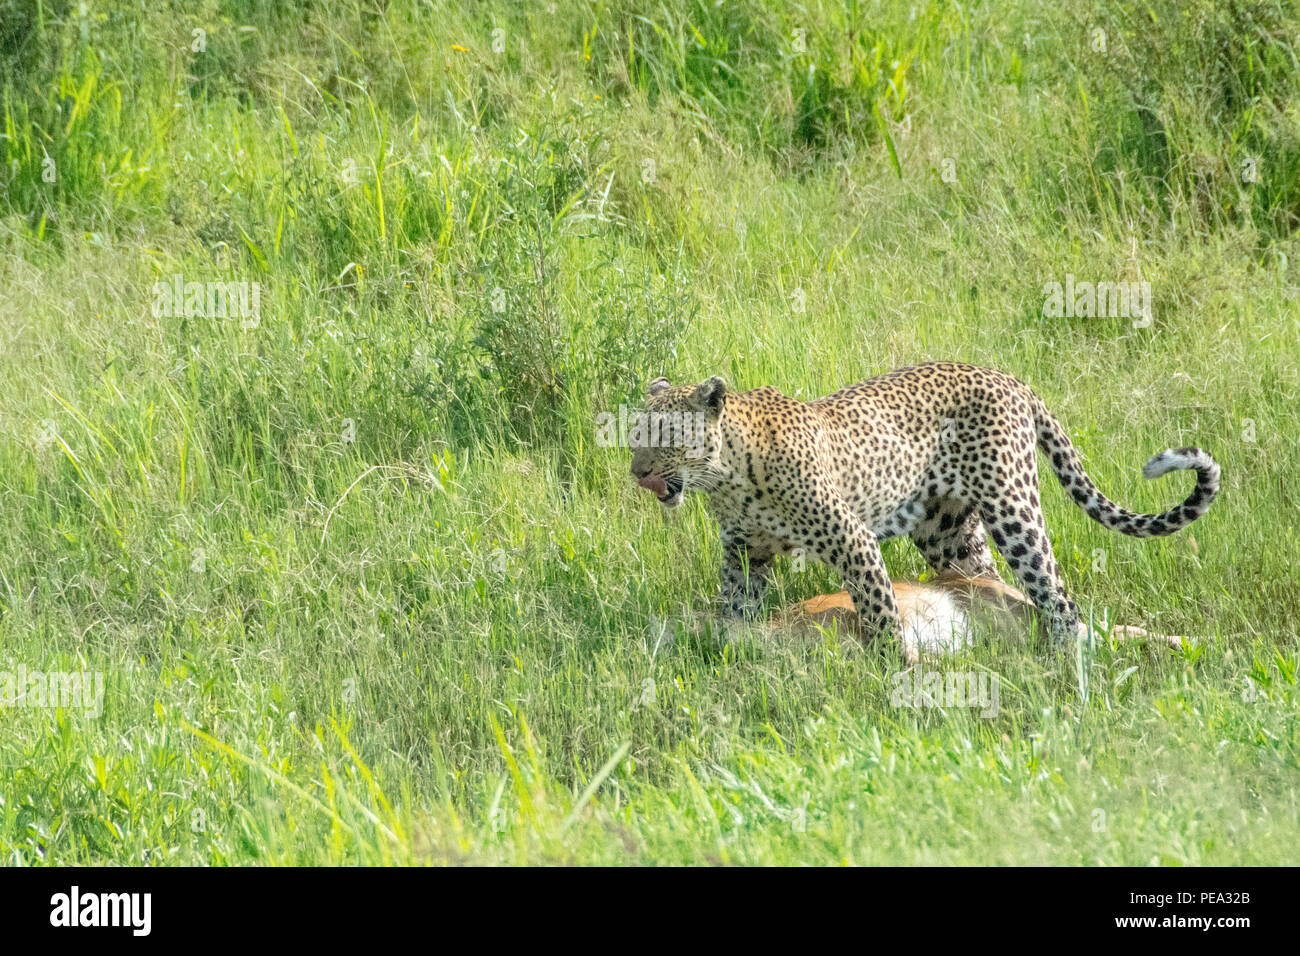 Un leopardo aspecto cansado después de rastrear su presa durante un largo tiempo teniendo a su árbol. Foto de stock